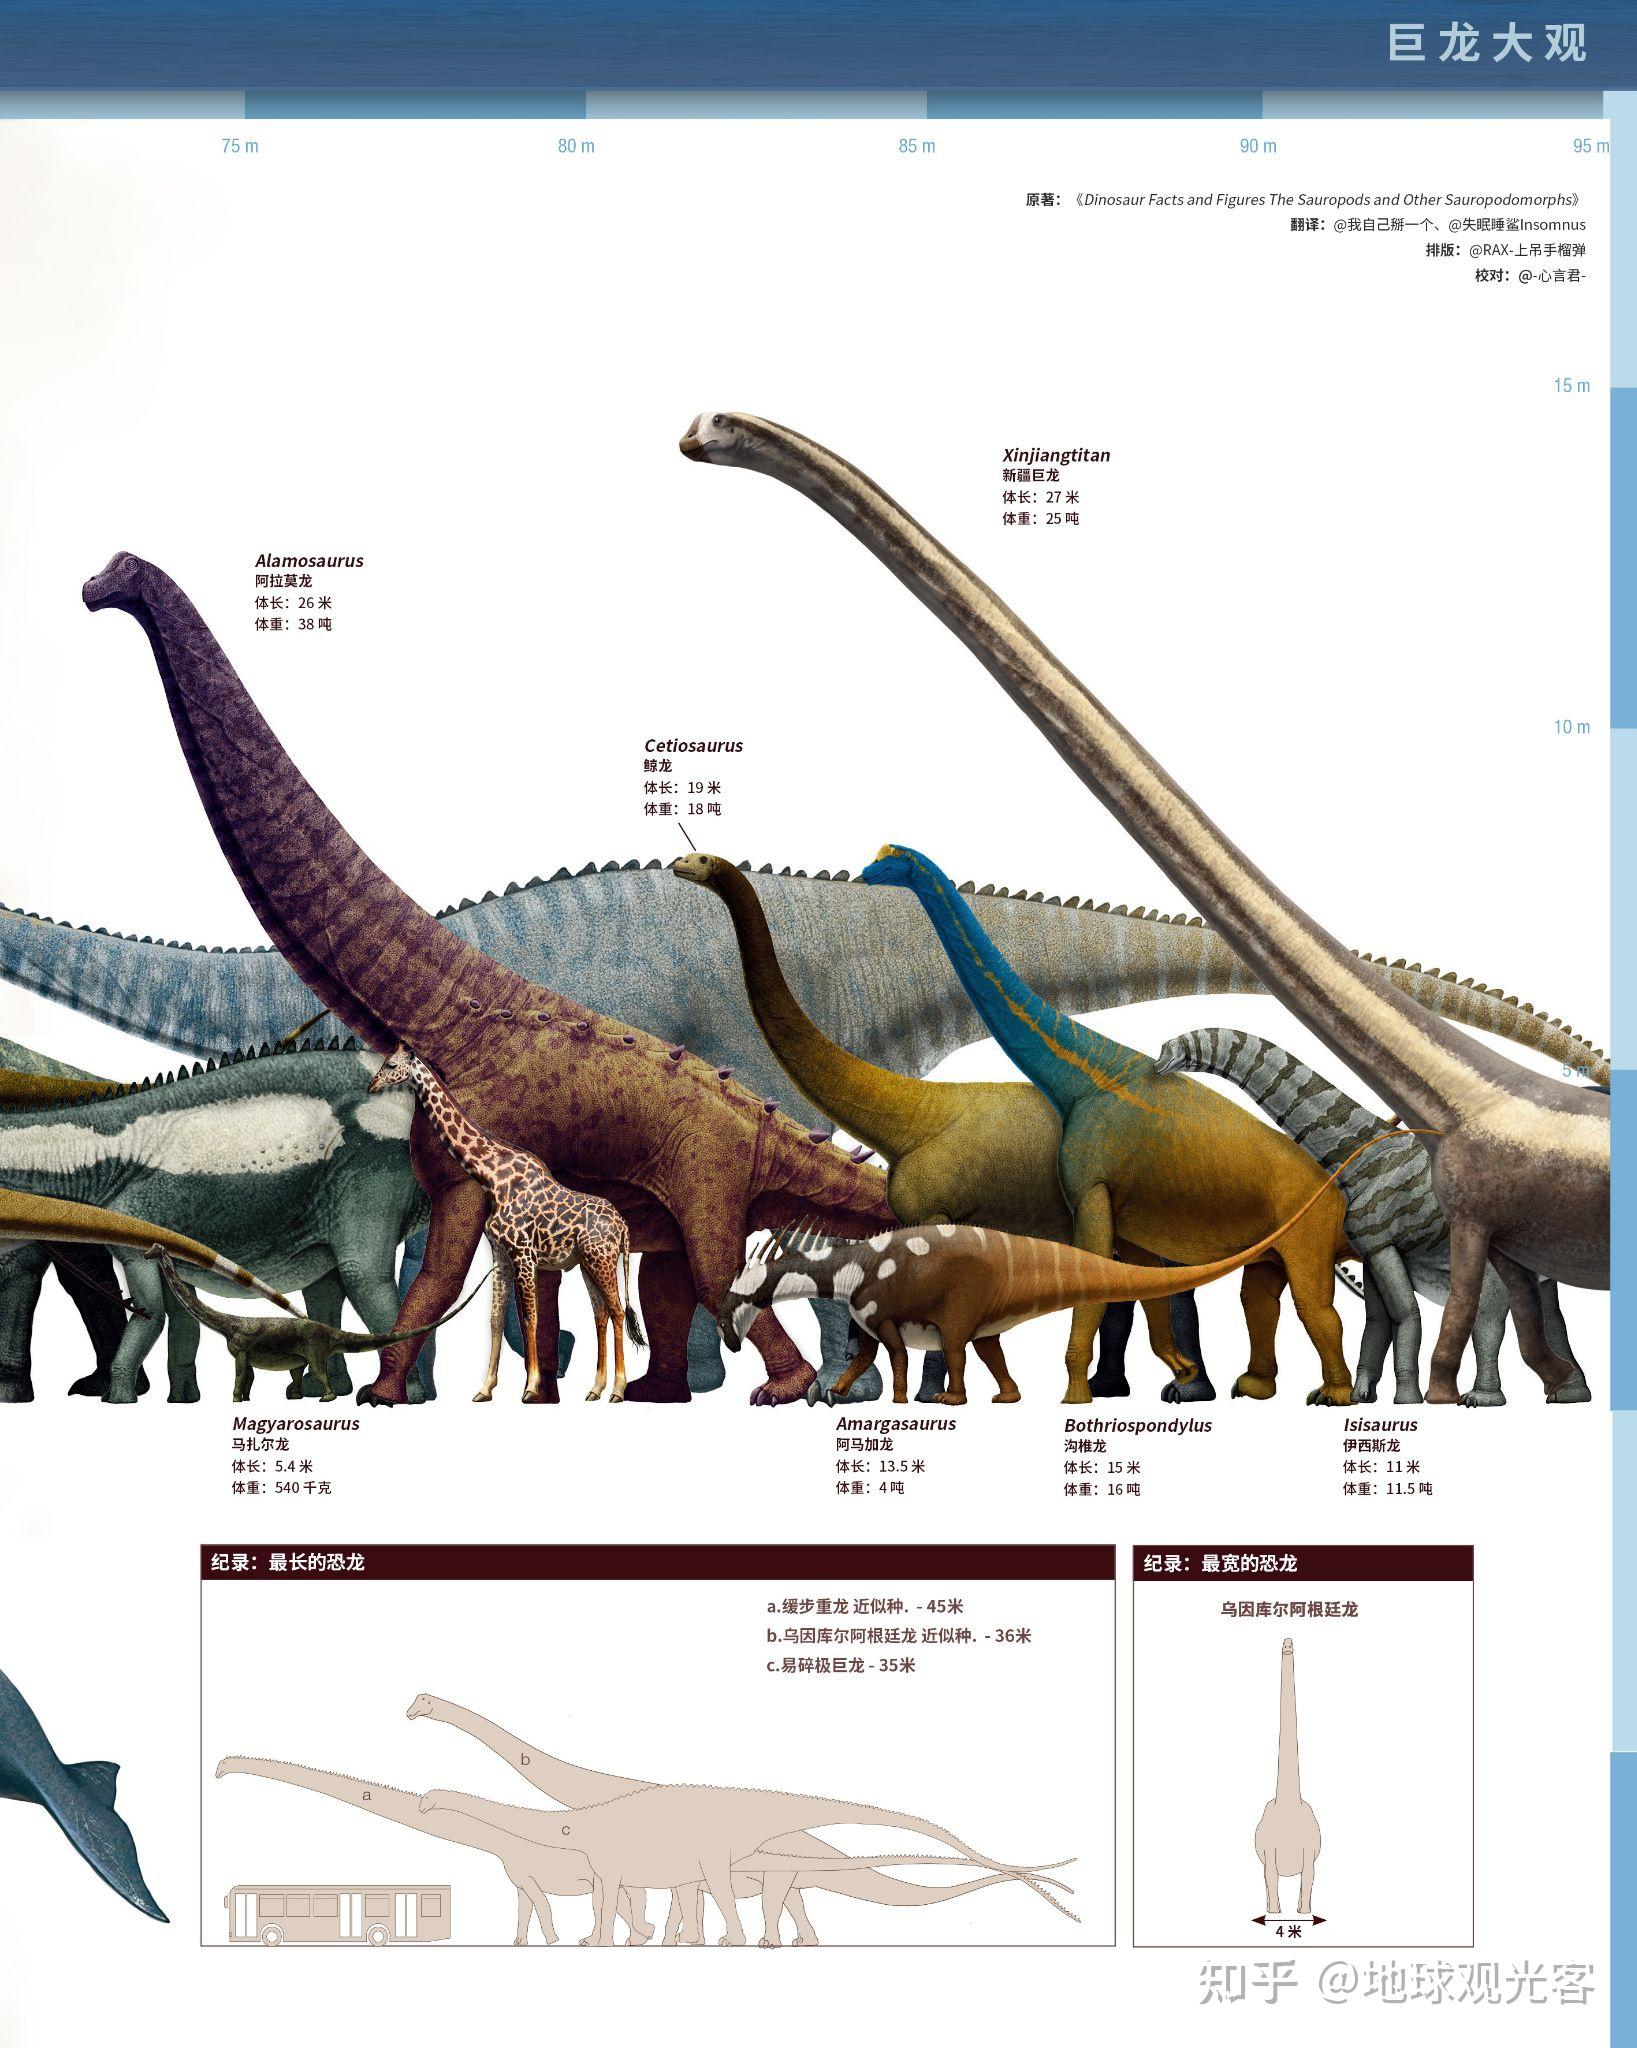 有哪些比较全的恐龙带名字的图片呢?